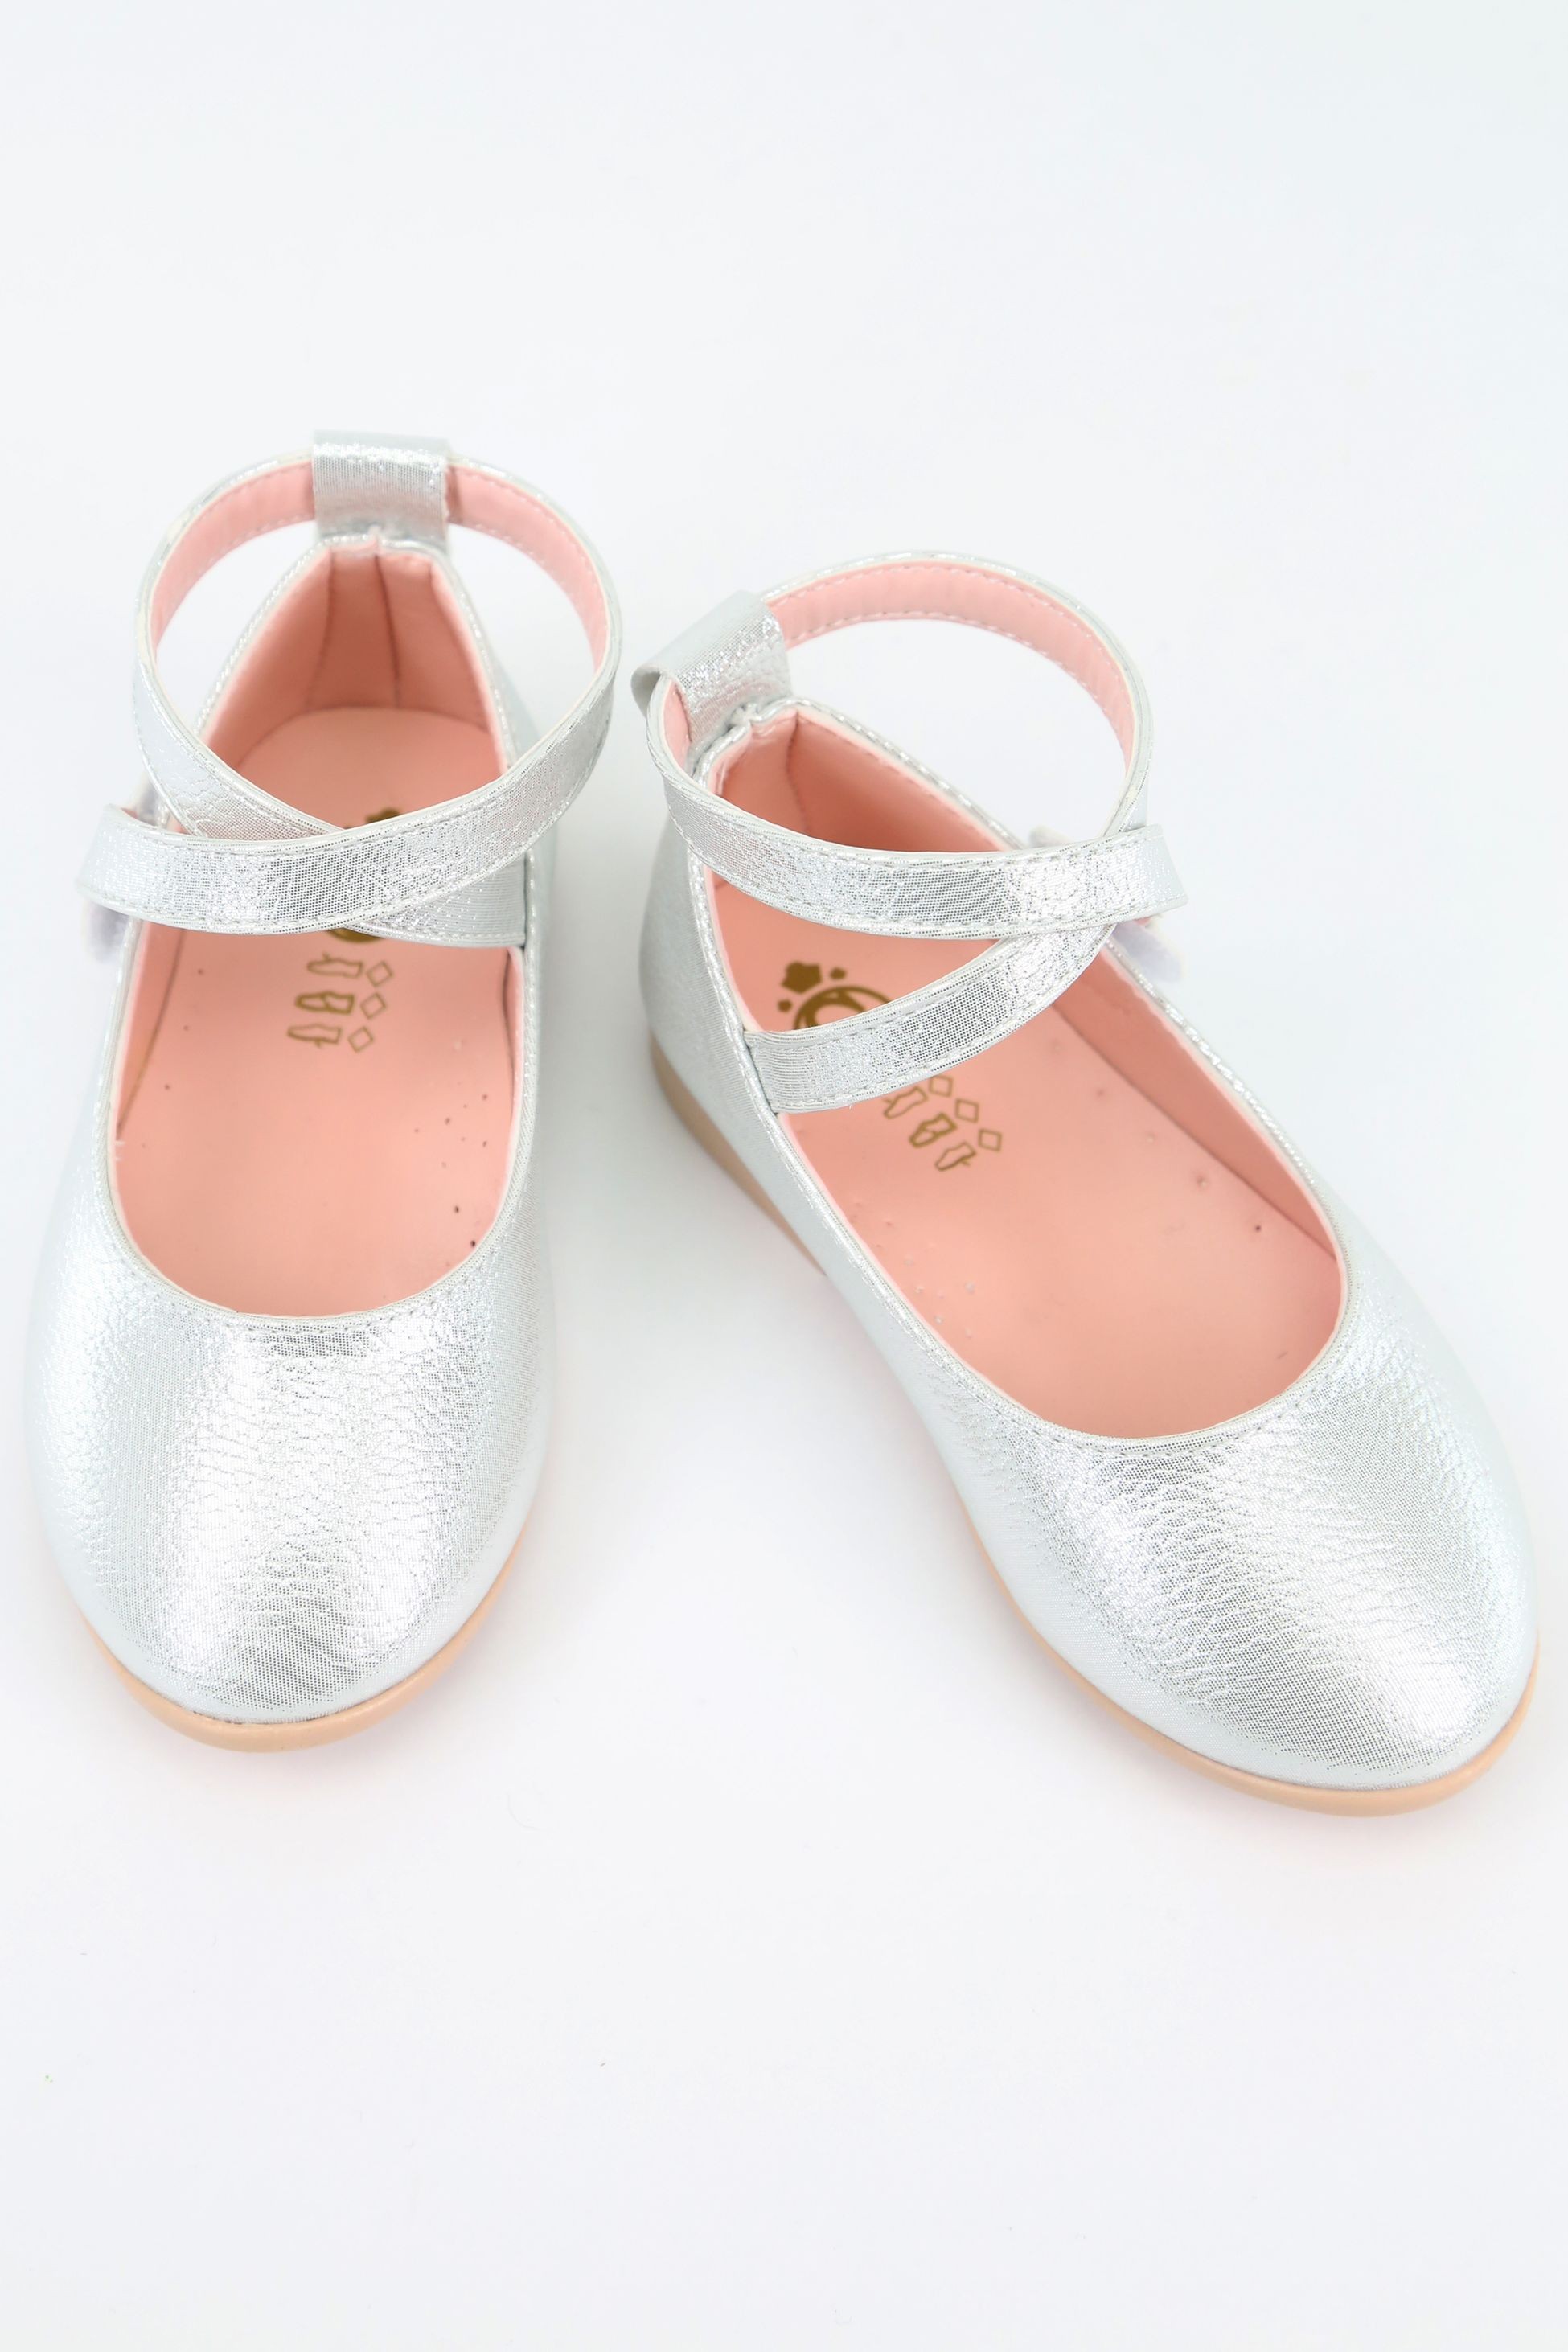 Mädchen Glänzende Mary Jane Flache Schuhe mit überkreuztem Riemen - Silber